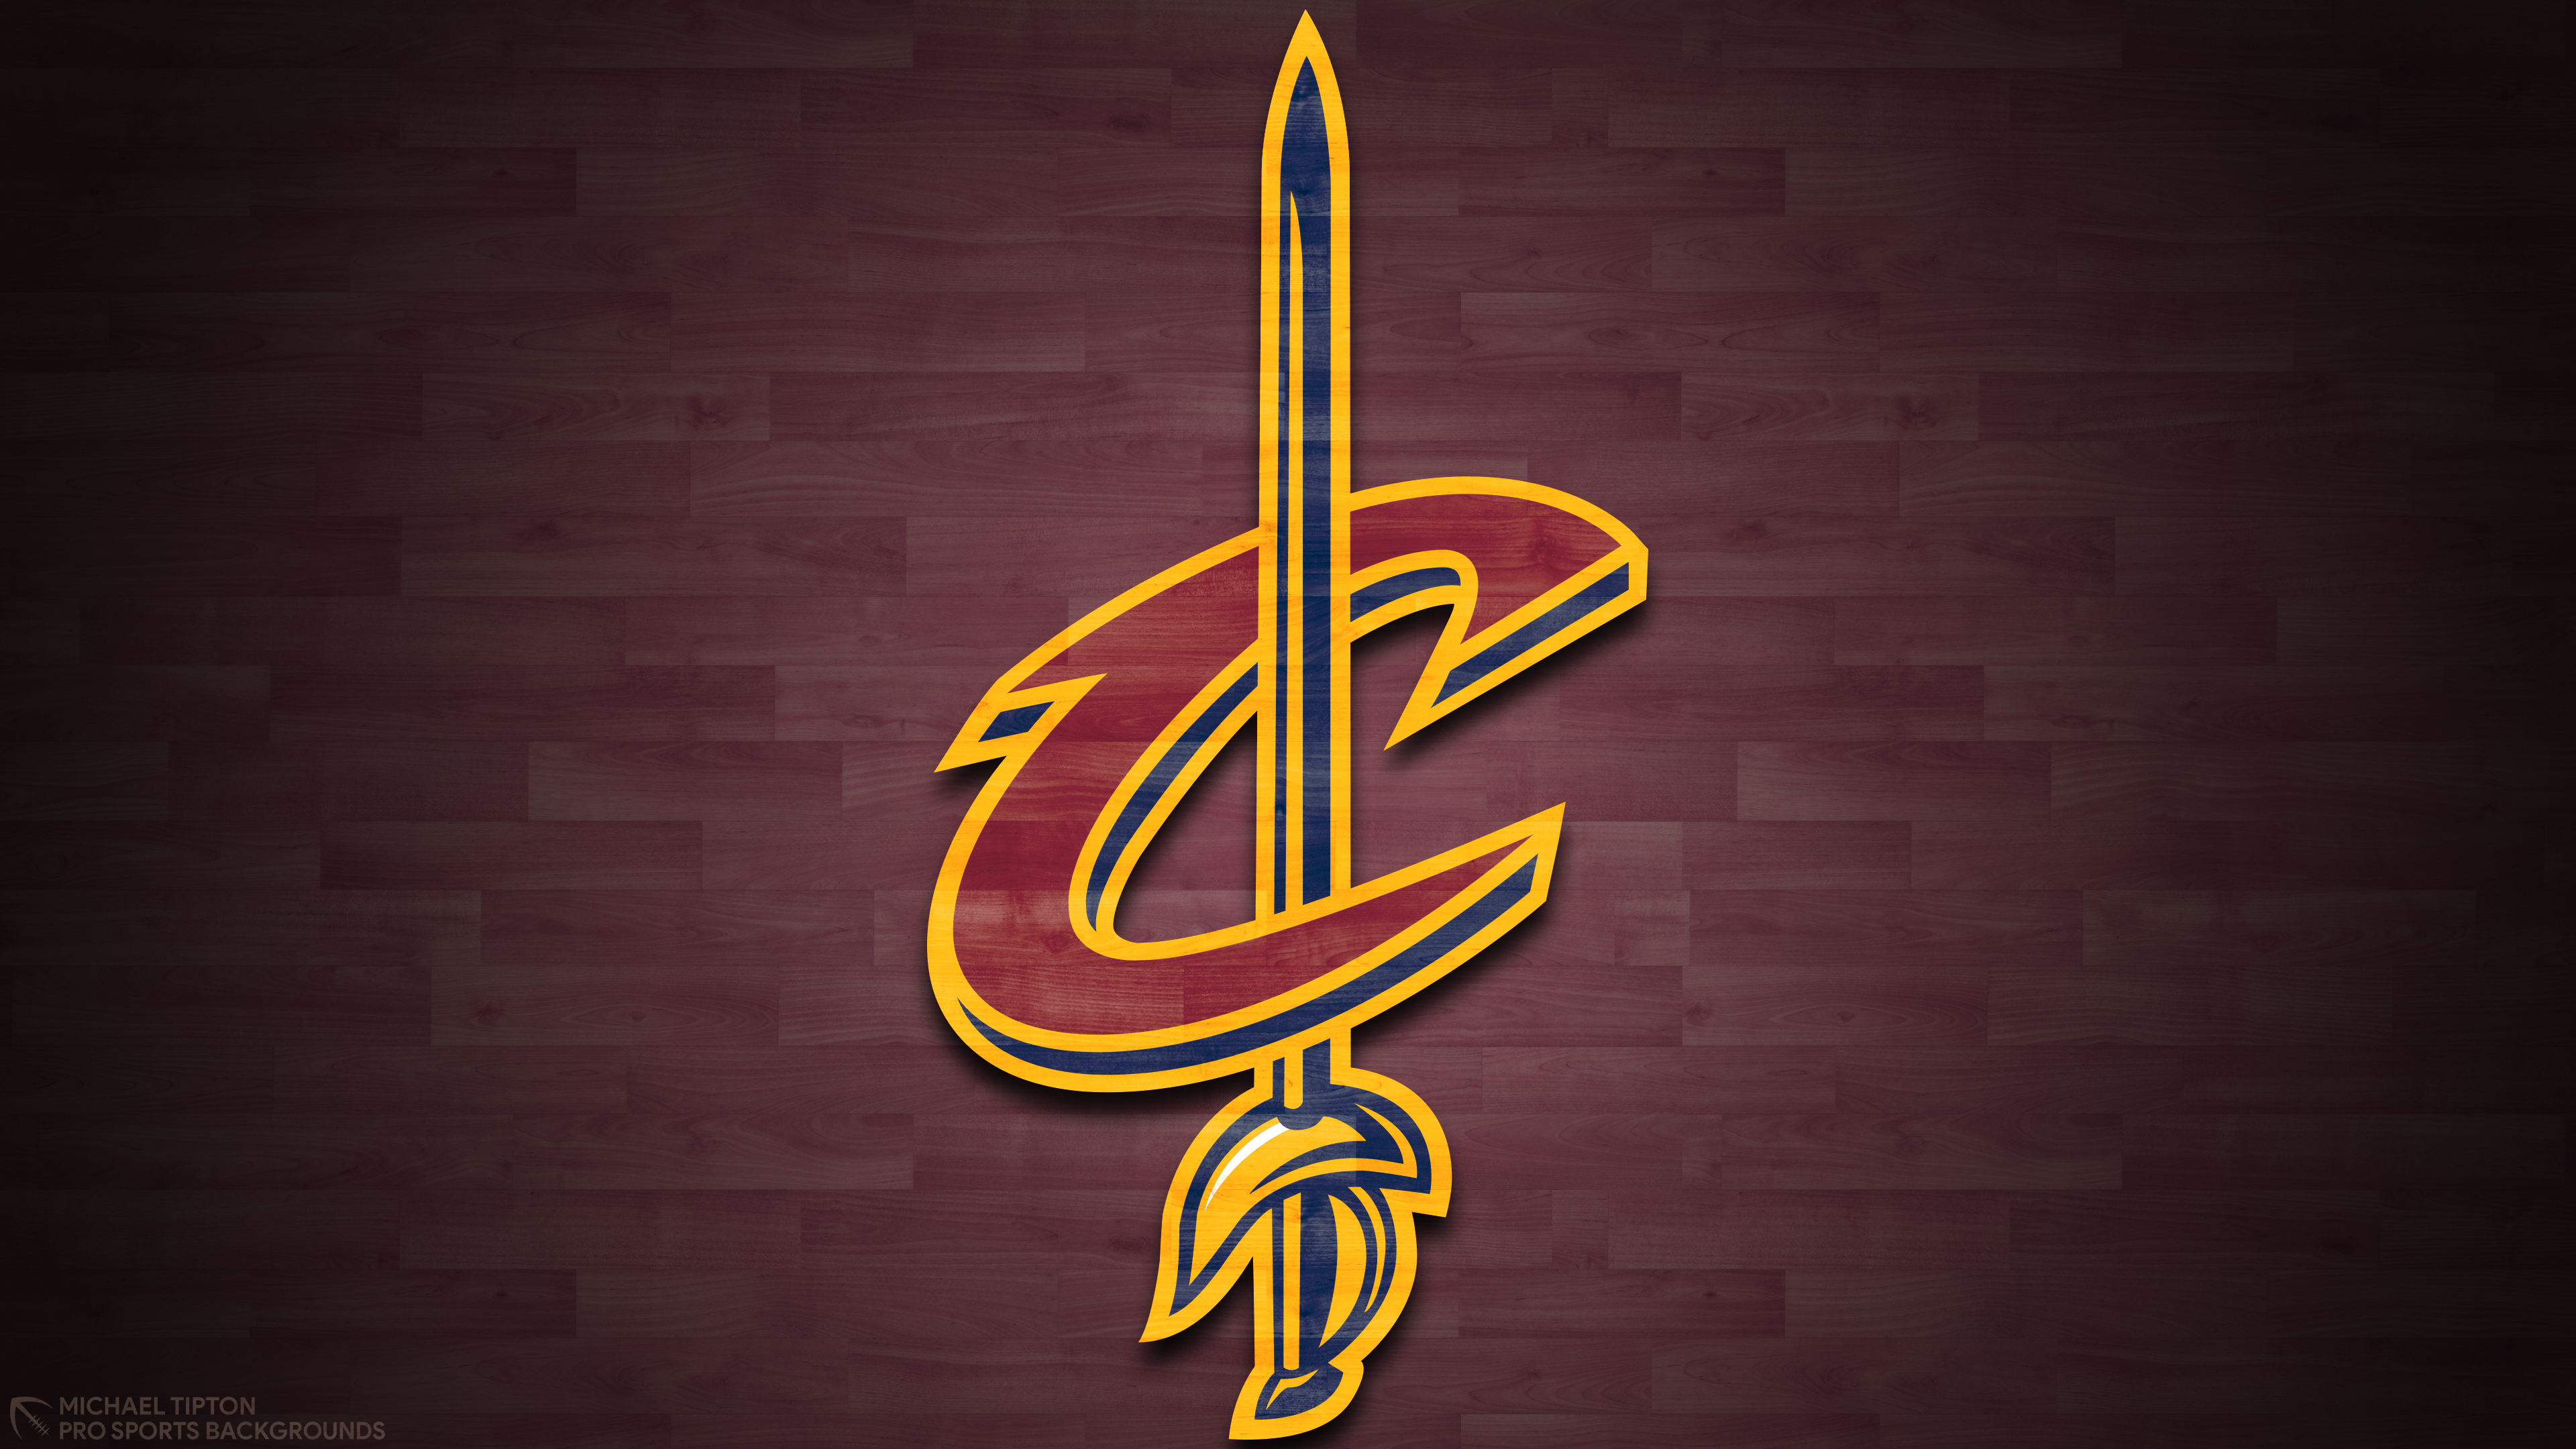 Basketball Cleveland Cavaliers Logo Nba Wallpaper:3840x2160